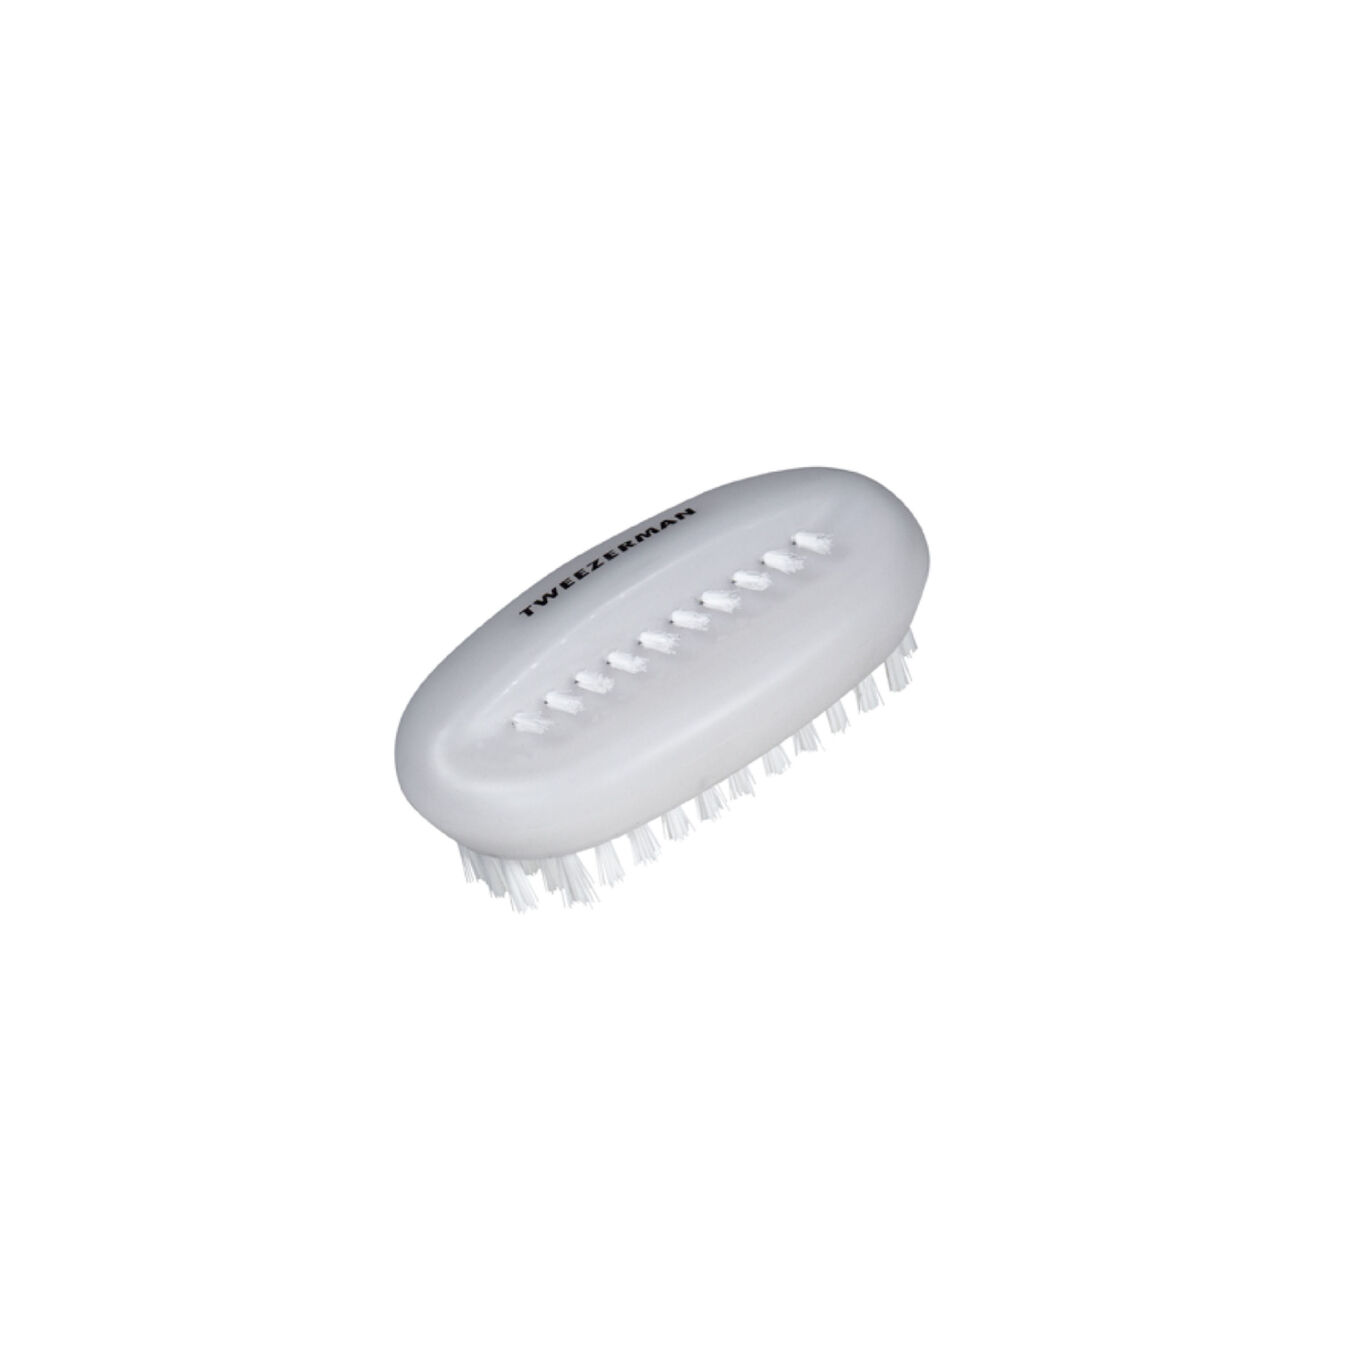 Cepillo de uñas, Plástico | Blanco puro,,large 1